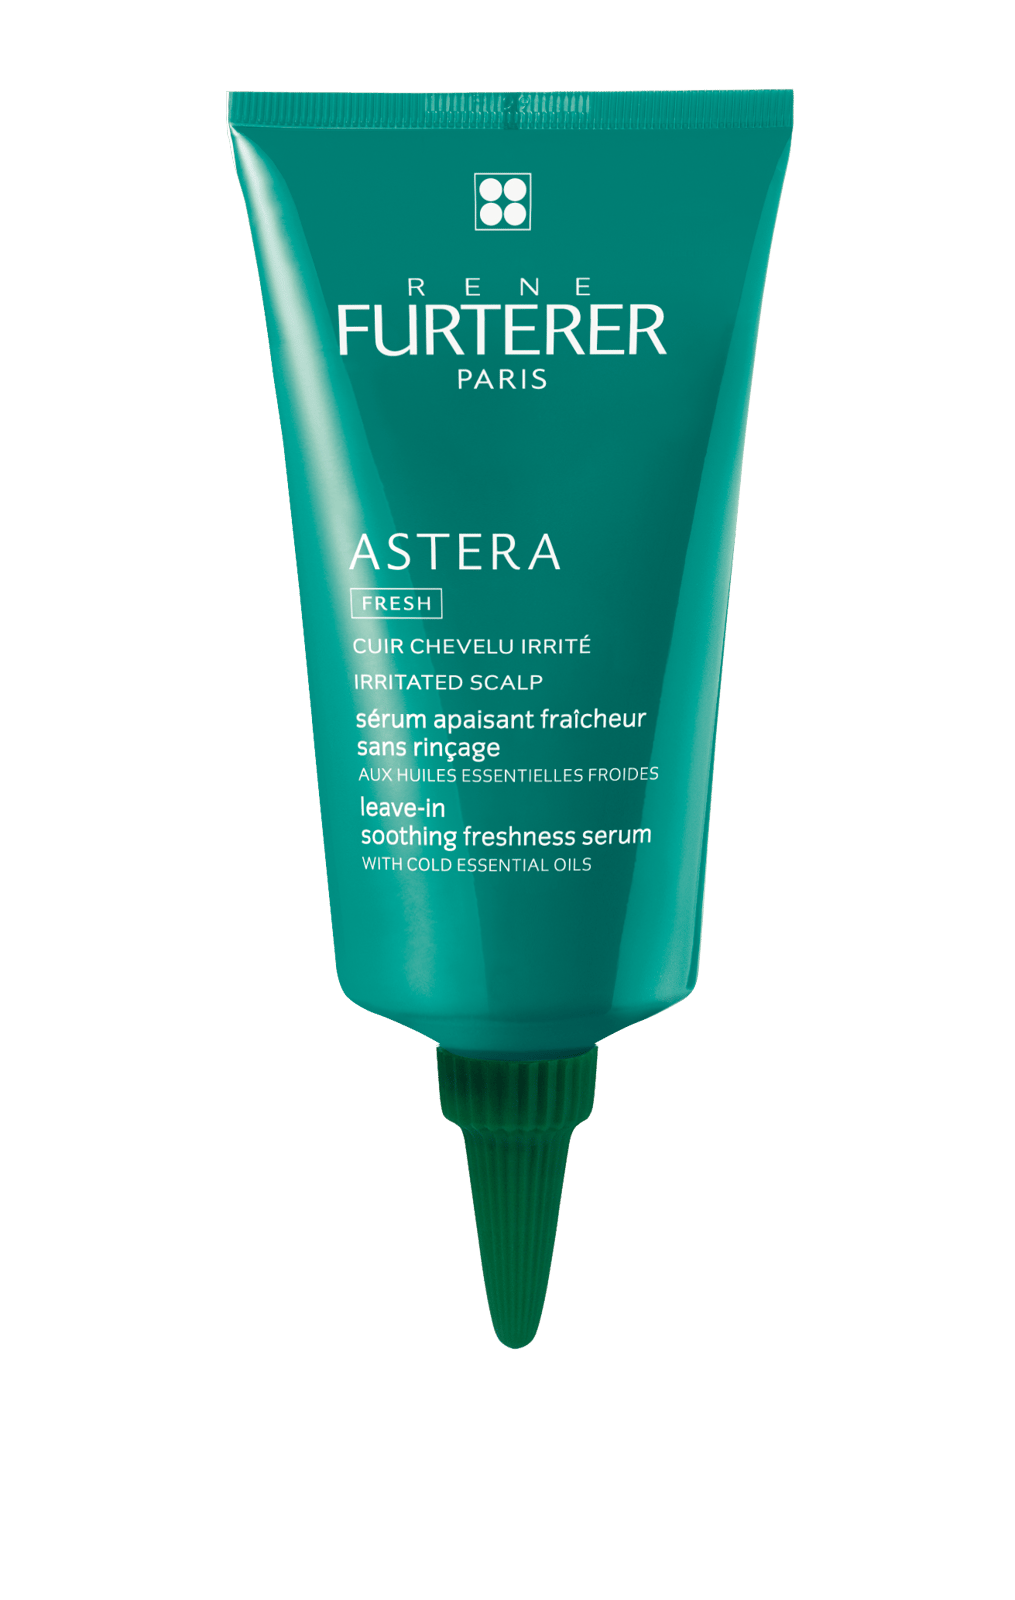 René Furterer Astera Fresh Leave-in Soothing Freshness Serum 75ml (2.54fl oz)